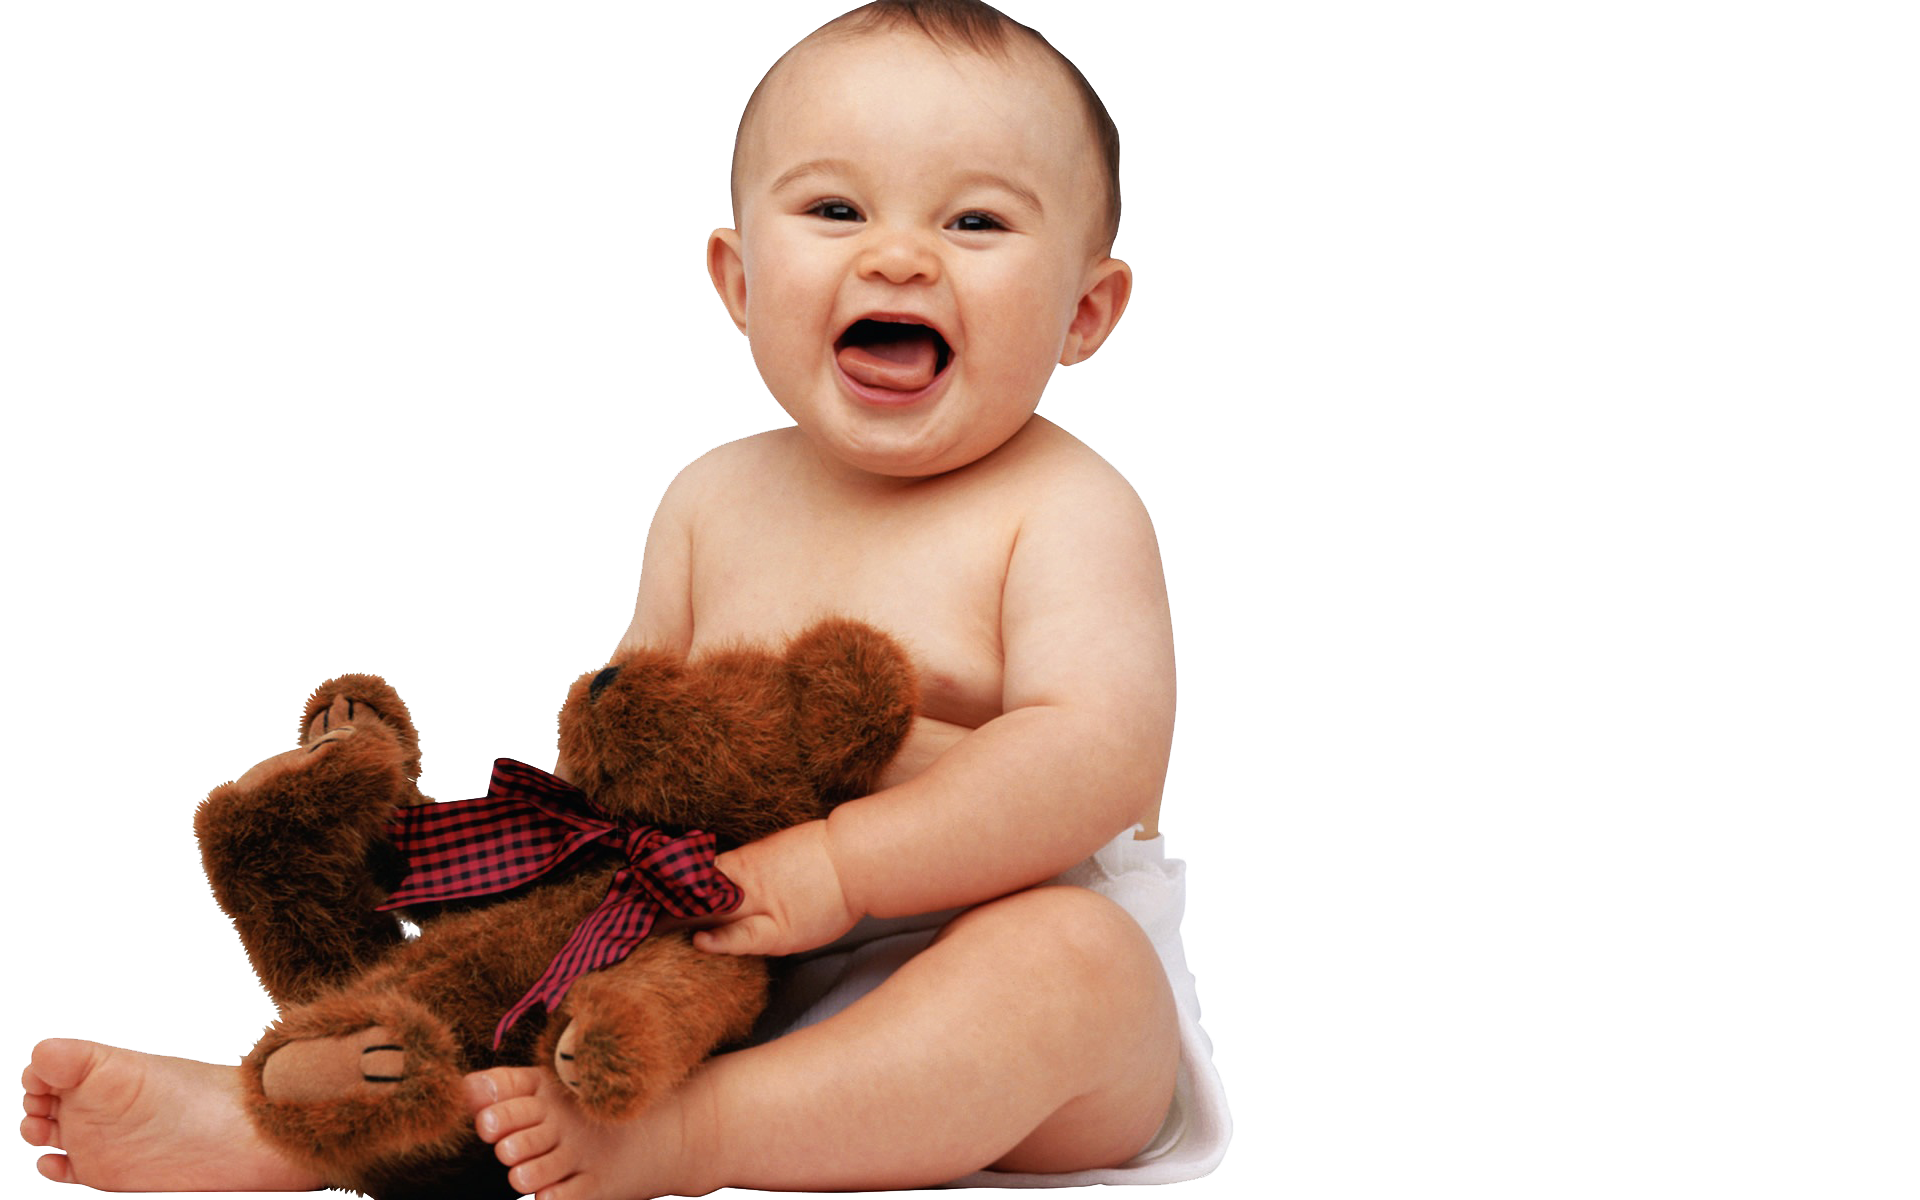 Baby Smiling Toddler HQ Image Free PNG Image